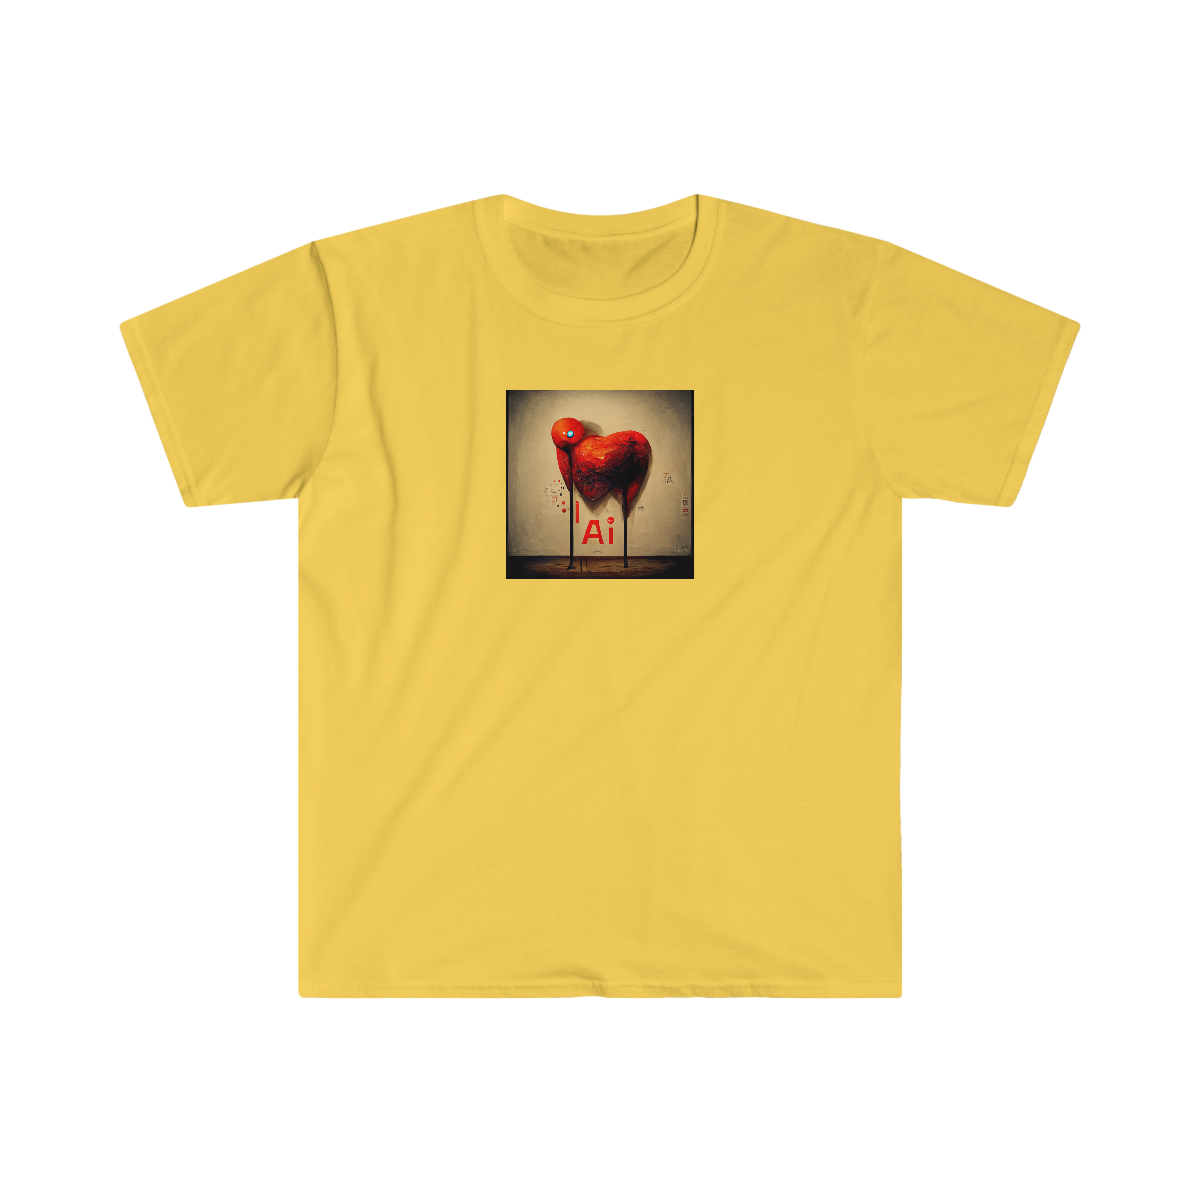 I Art Ai - Unisex Softstyle T-Shirt